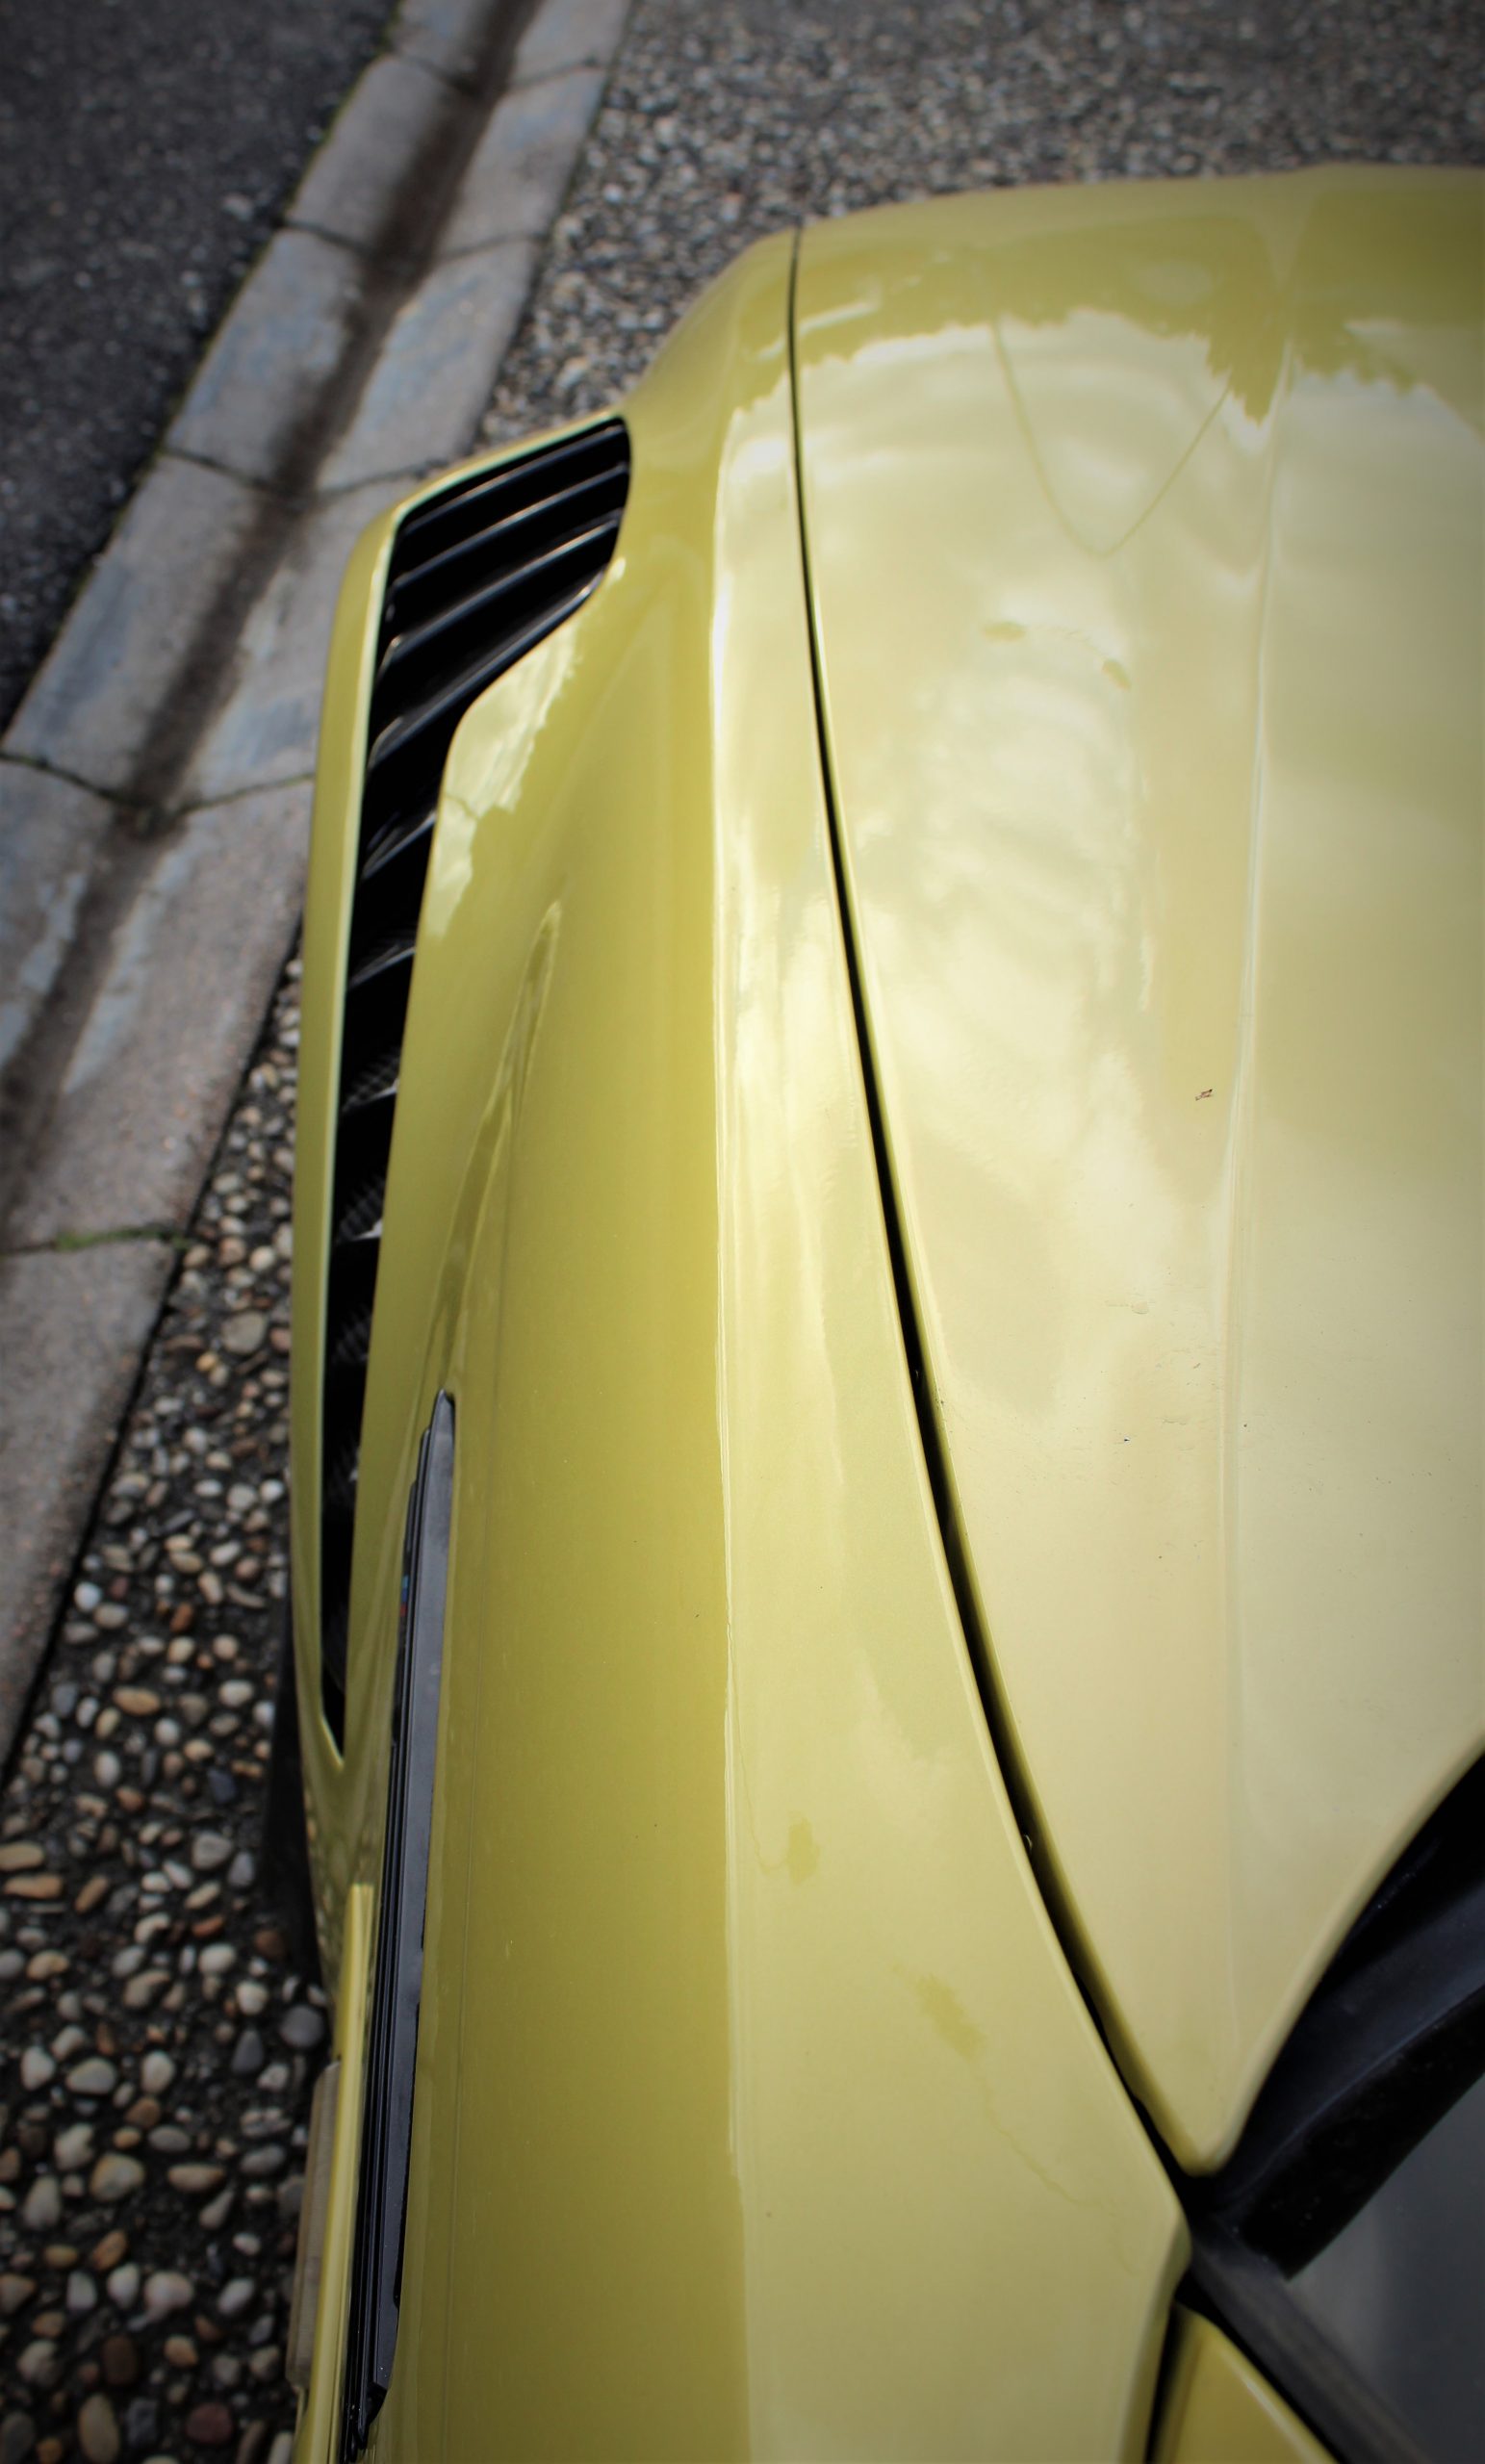 Varis Front für BMW E46 M3 - (Carbon) - online kaufen bei CFD